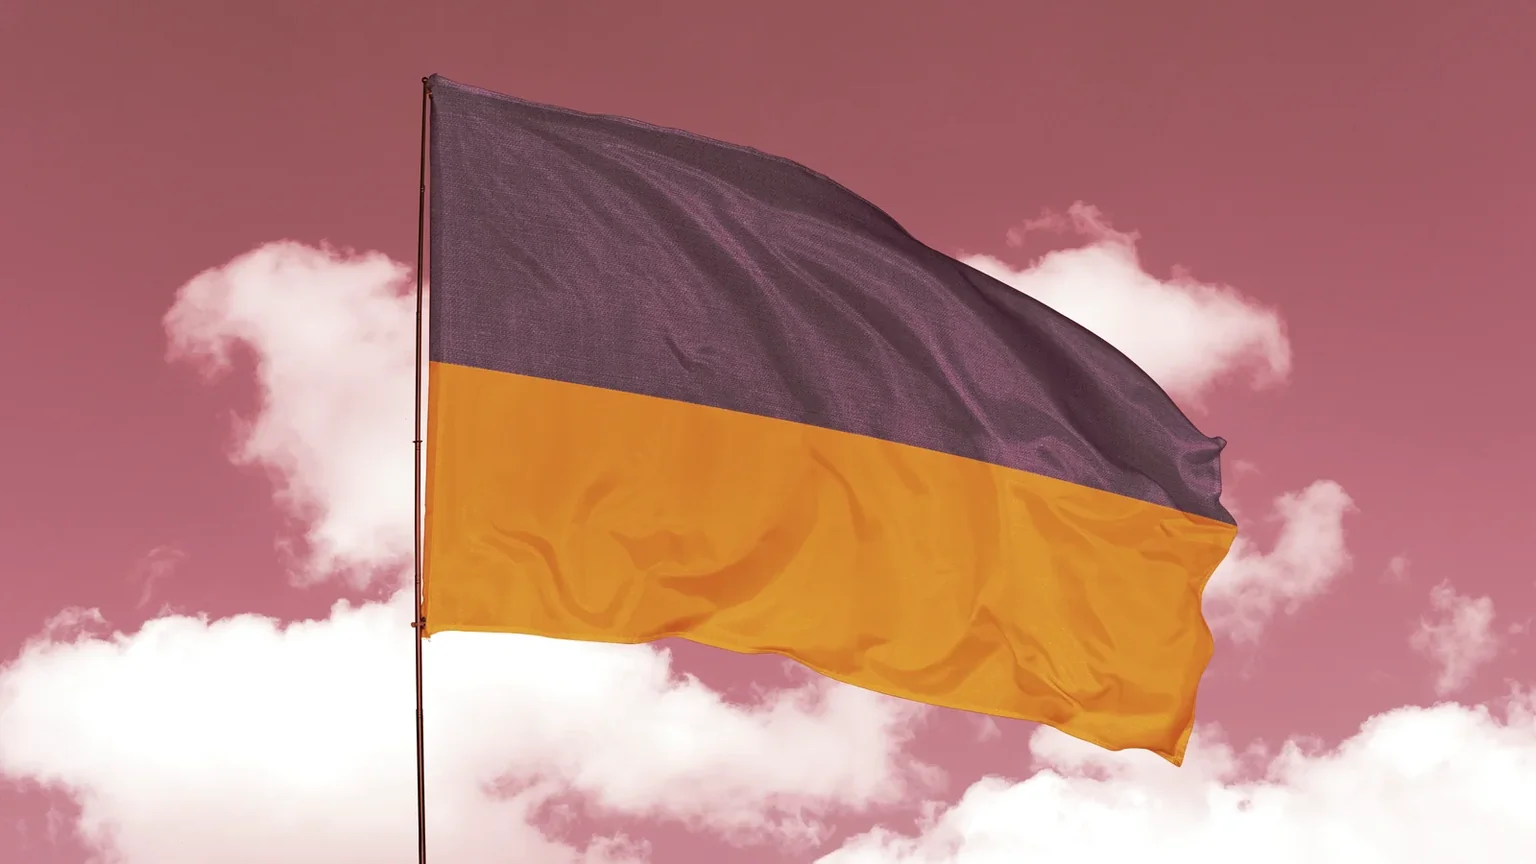 The Ukrainian Flag. Image: Shutterstock